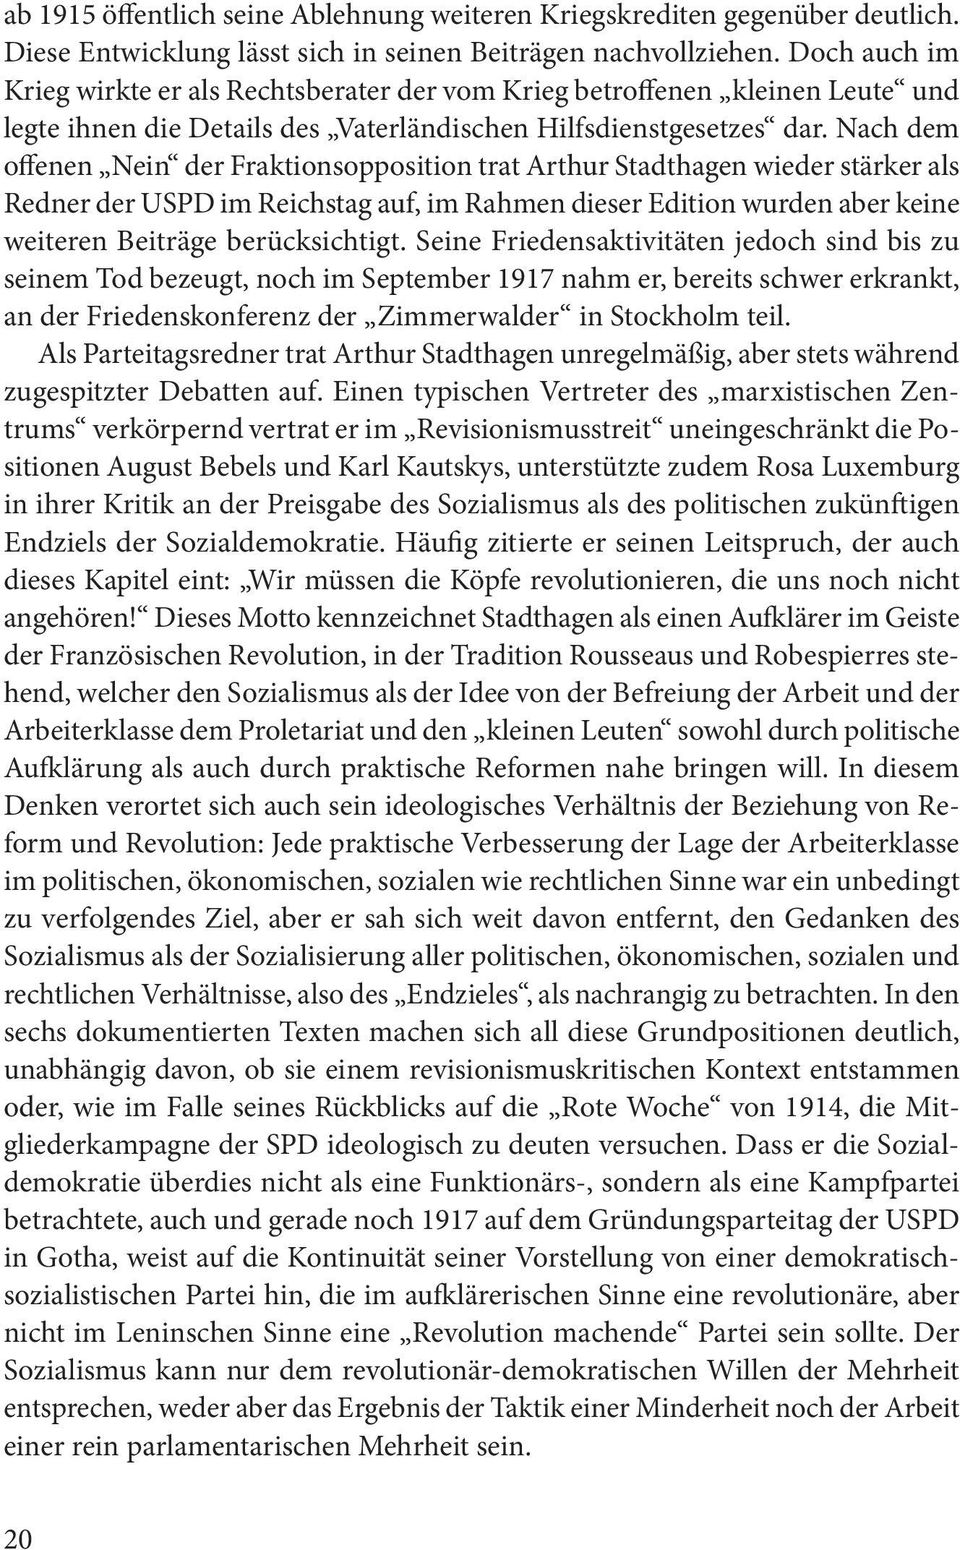 Nach dem offenen Nein der Fraktionsopposition trat Arthur Stadthagen wieder stärker als Redner der USPD im Reichstag auf, im Rahmen dieser Edition wurden aber keine weiteren Beiträge berücksichtigt.